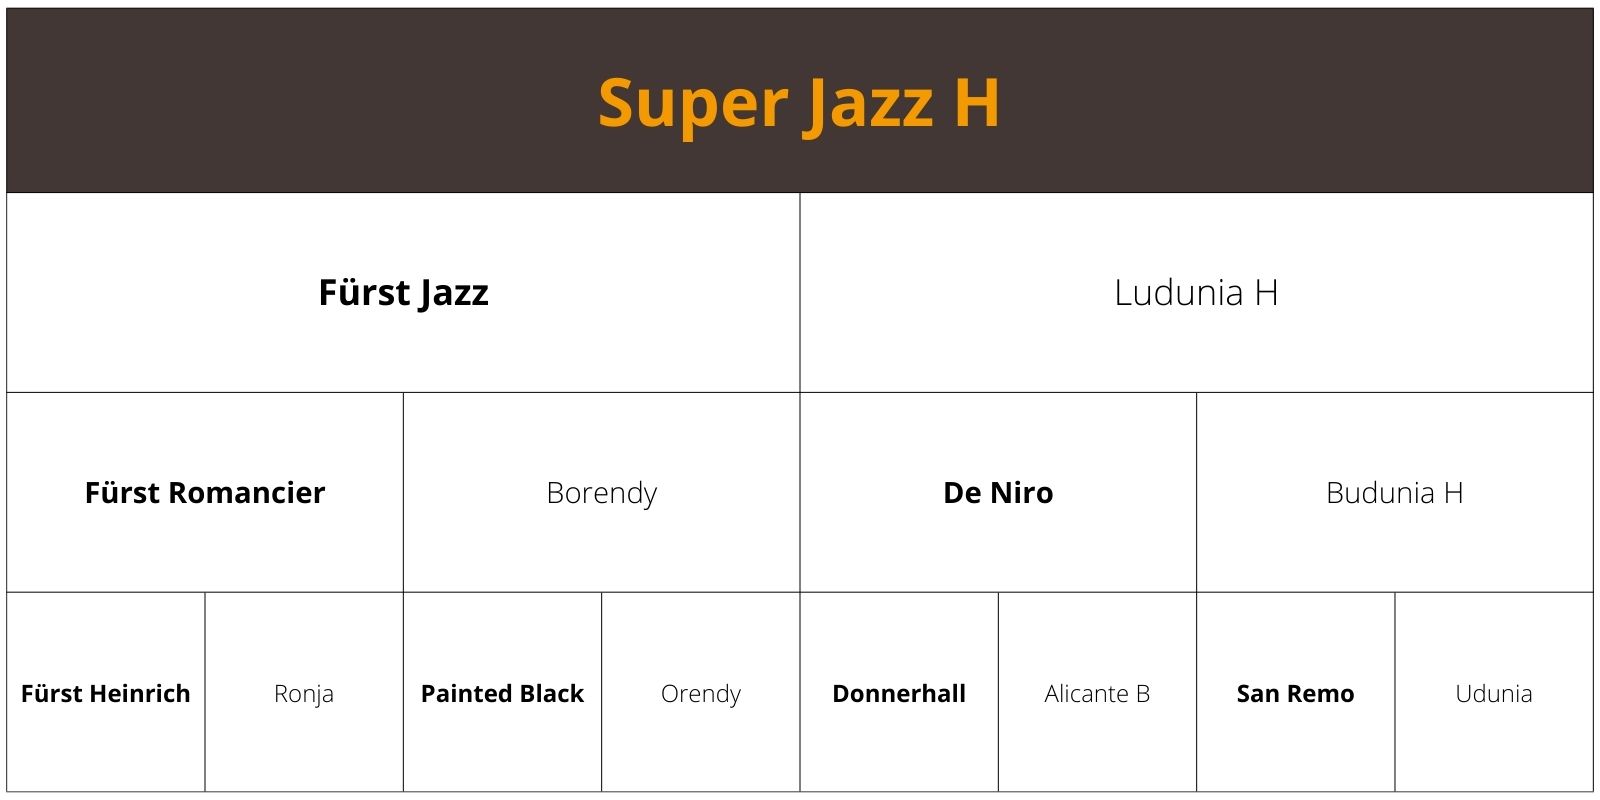 Super Jazz H